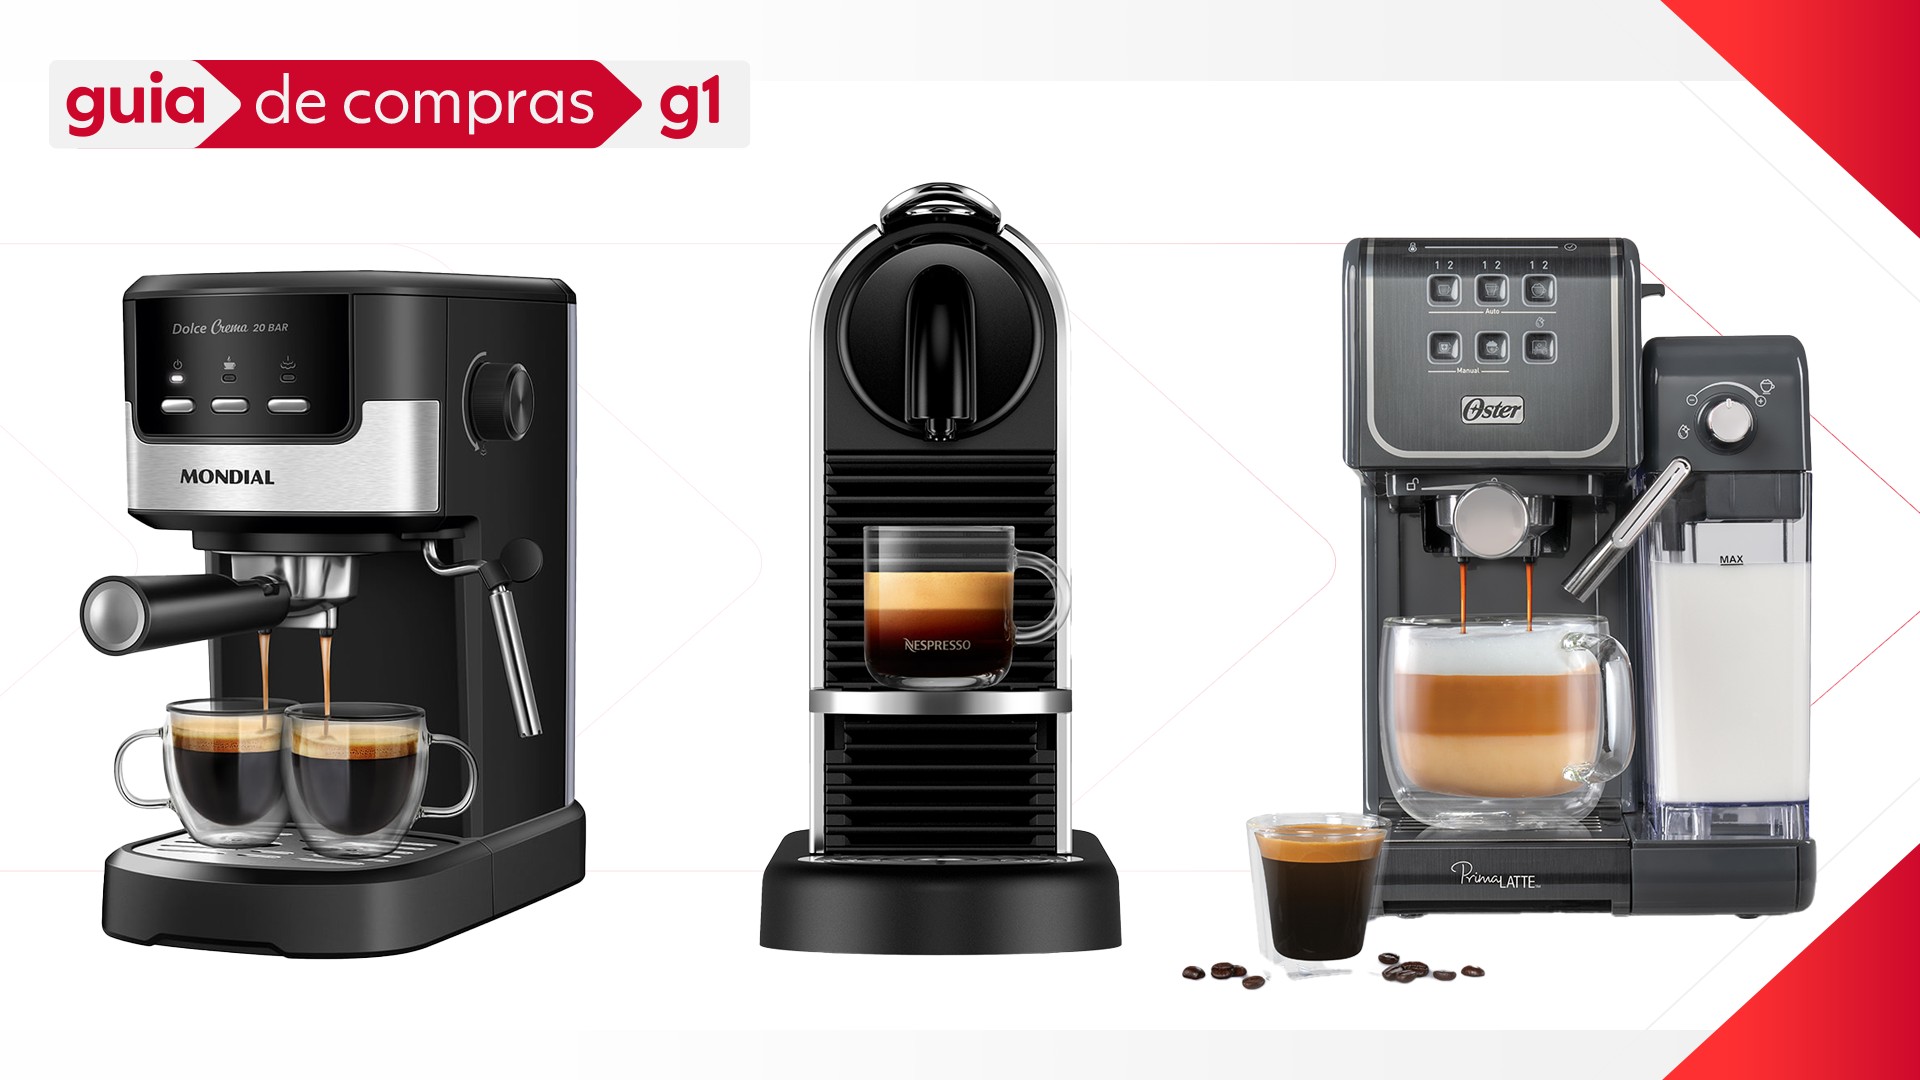 Café espresso: g1 testa 3 máquinas compatíveis com cápsulas 